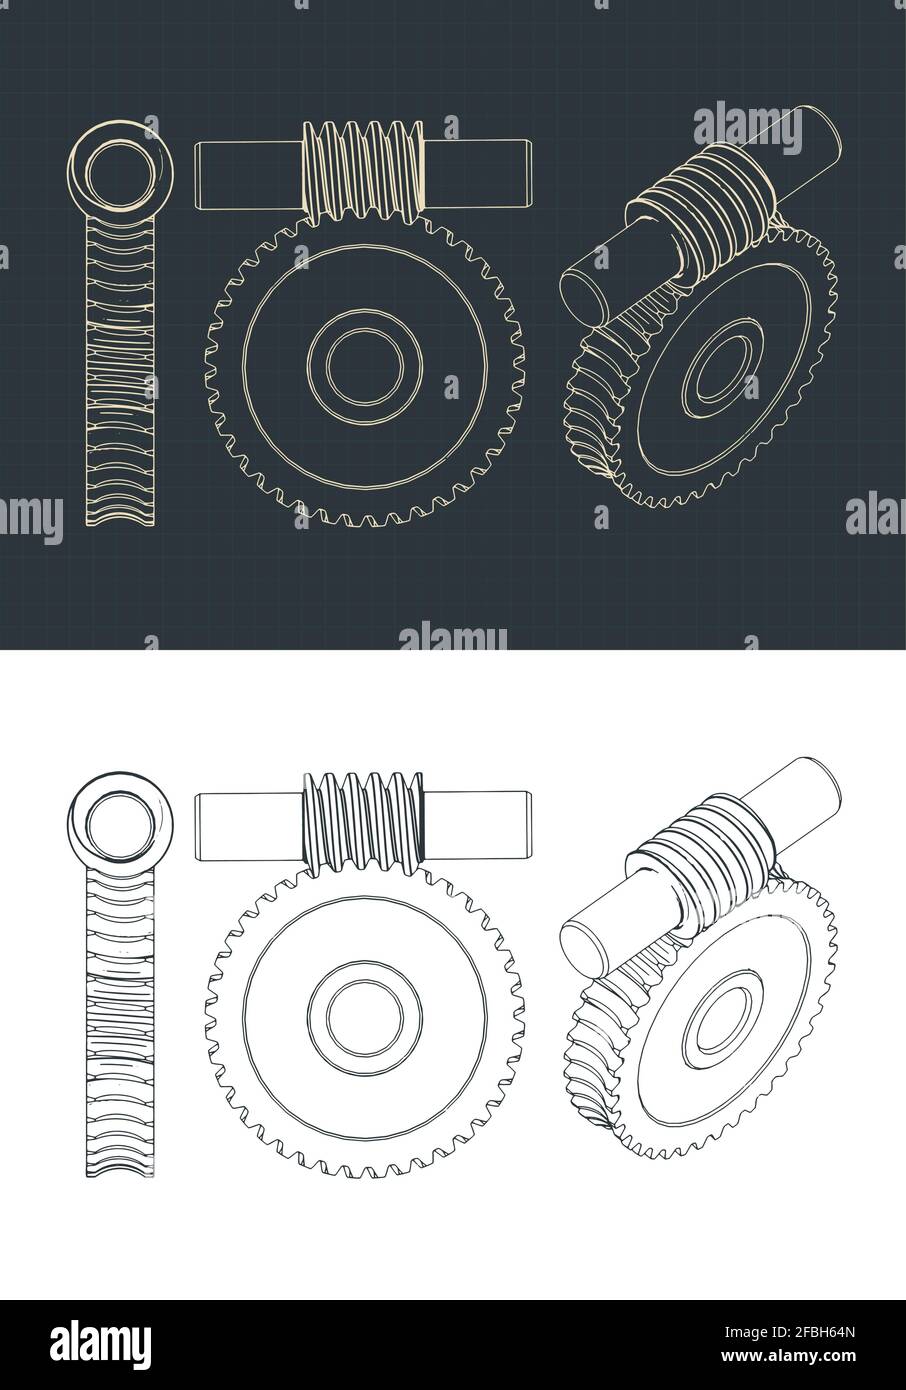 Stilisierte Vektor-Illustrationen von Archimedes Wurm- und Evolventenzahnradentwürfen Stock Vektor